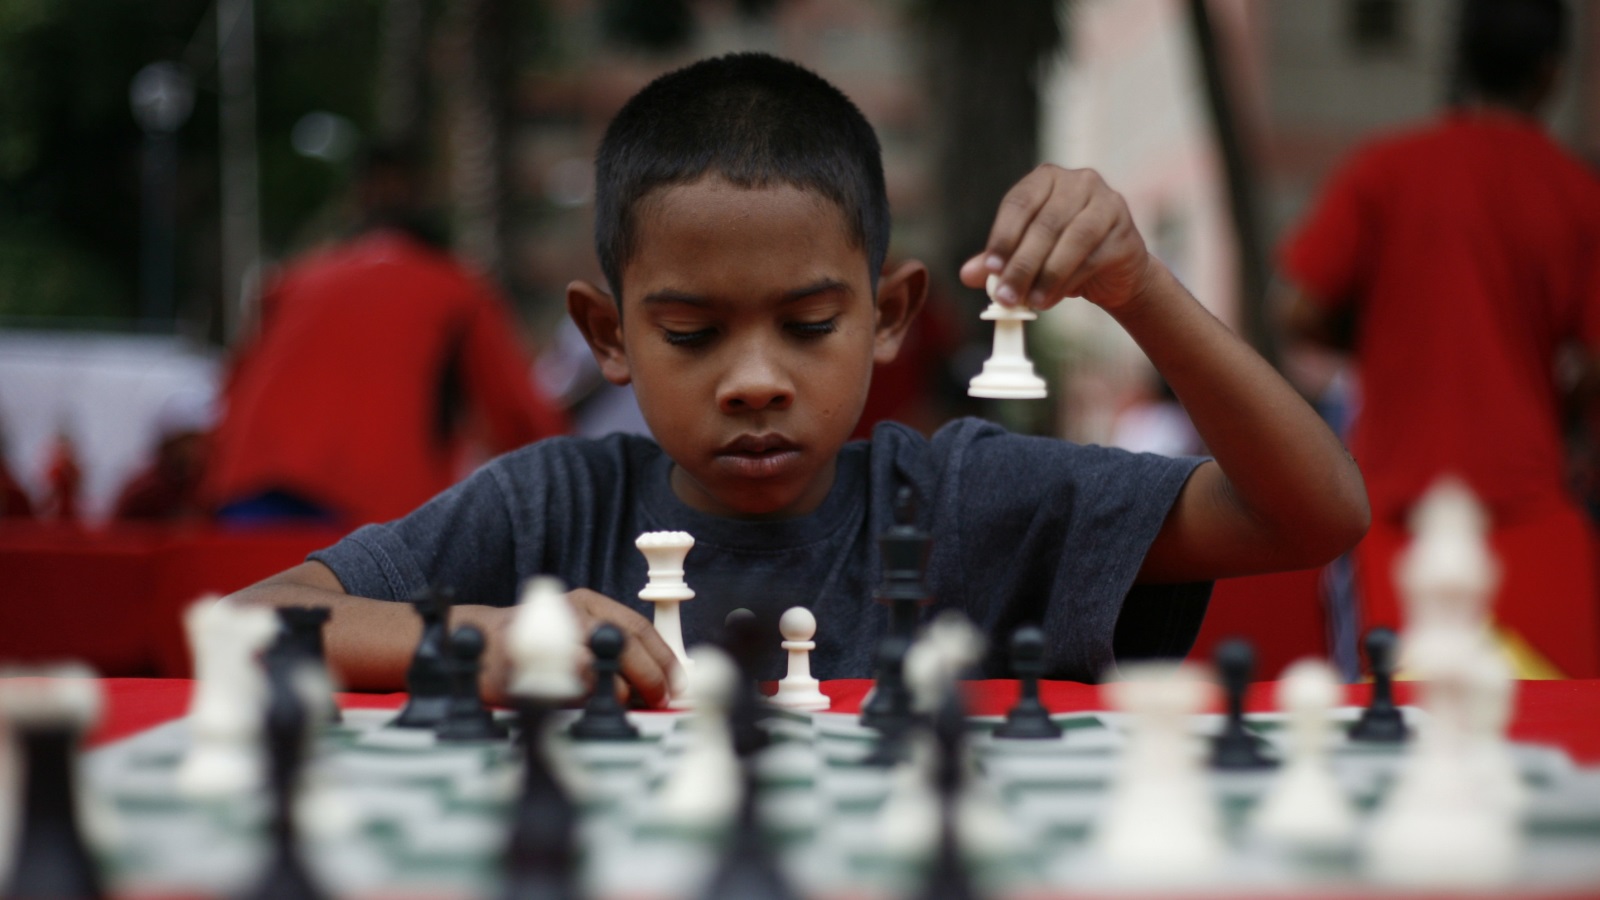 العمر ما يزال عاملا مؤثرا في اتقان الشطرنج فعند ثبات كمية الممارسة المتراكمة، وجد أن من يشرعون في ممارسة اللعبة في سن مبكرة جدا، هم أكثر مهارة في الشطرنج ممن يبدؤون الممارسة في وقت لاحق